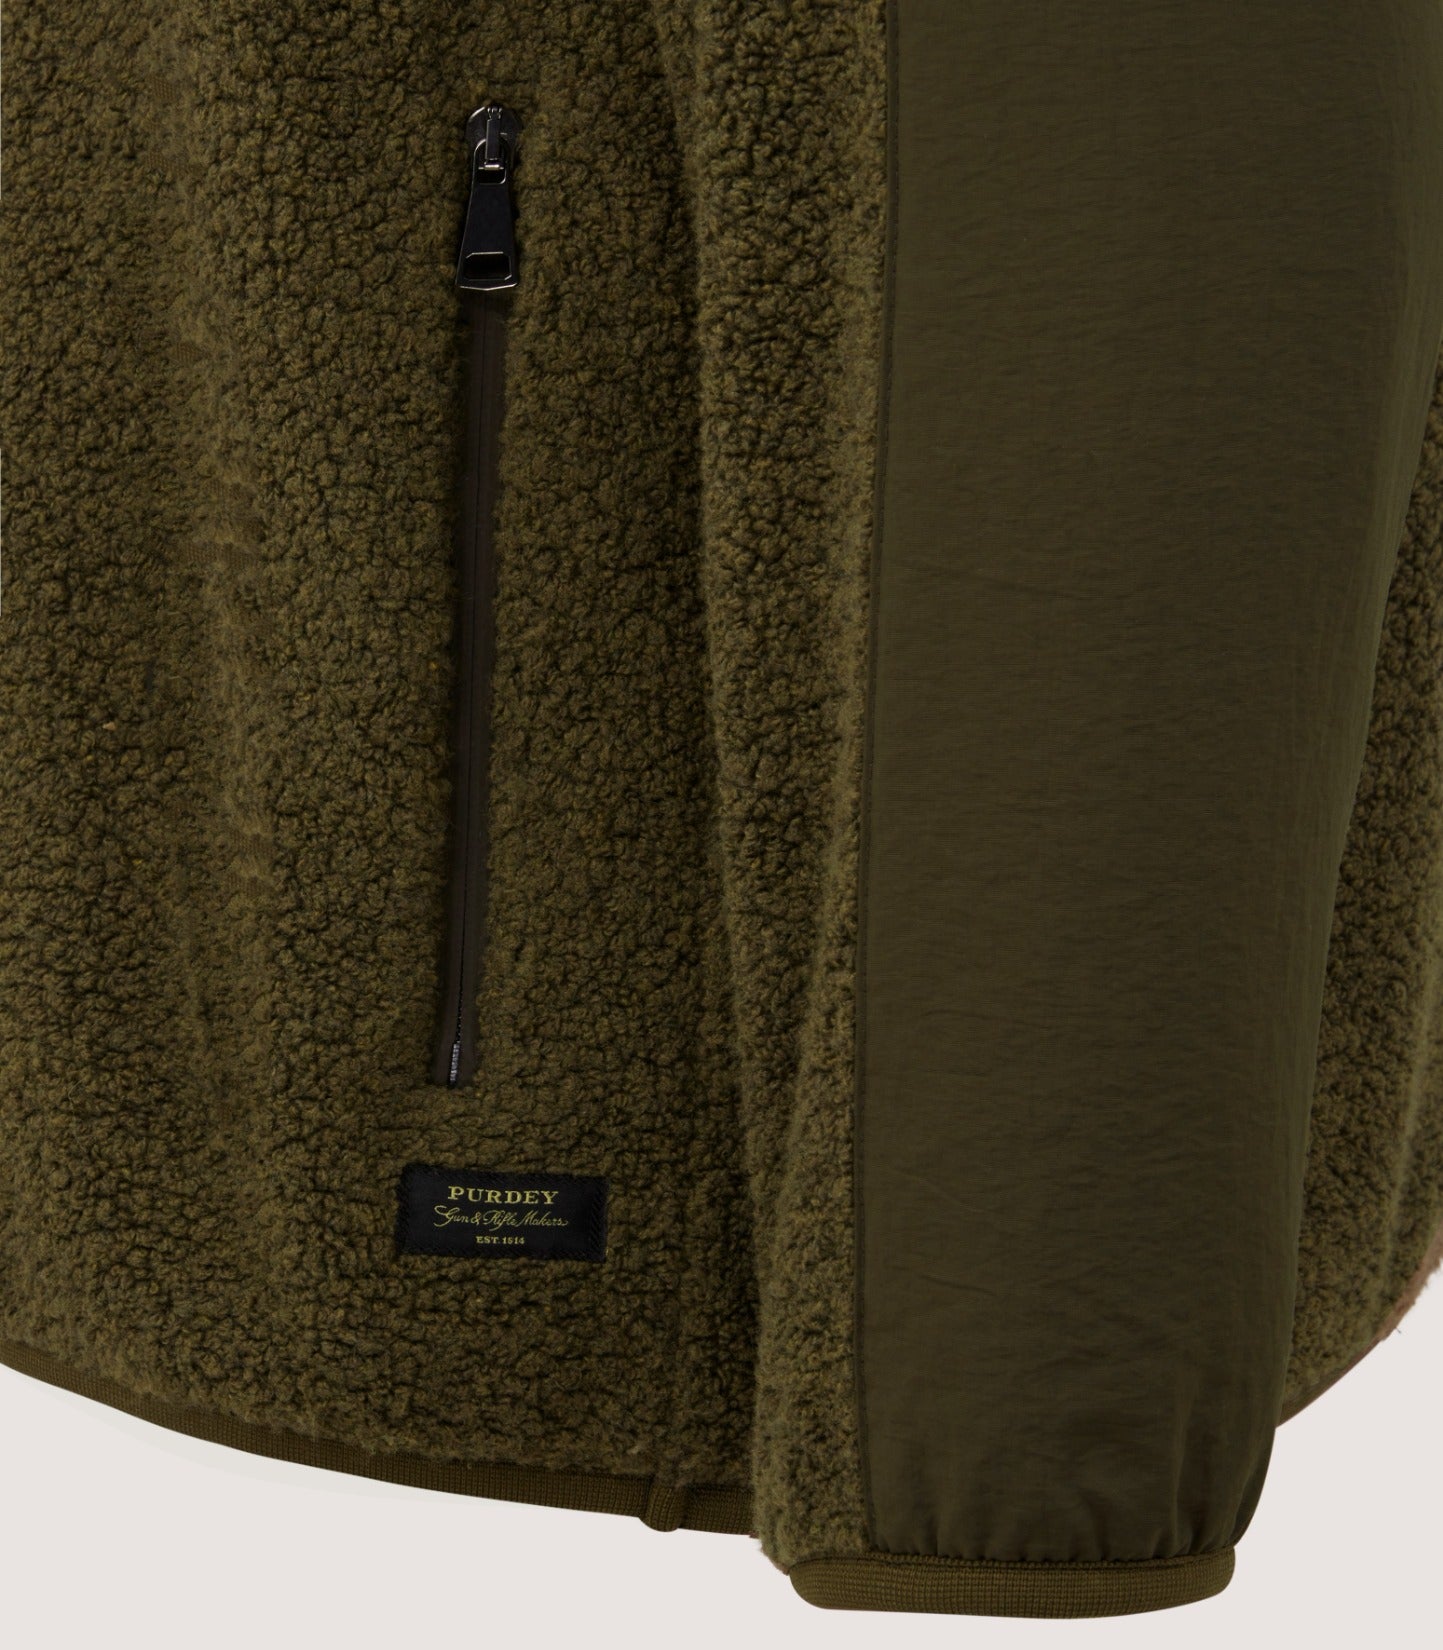 Men's Merino Lux Half Zip Sporting Fleece In Lichen